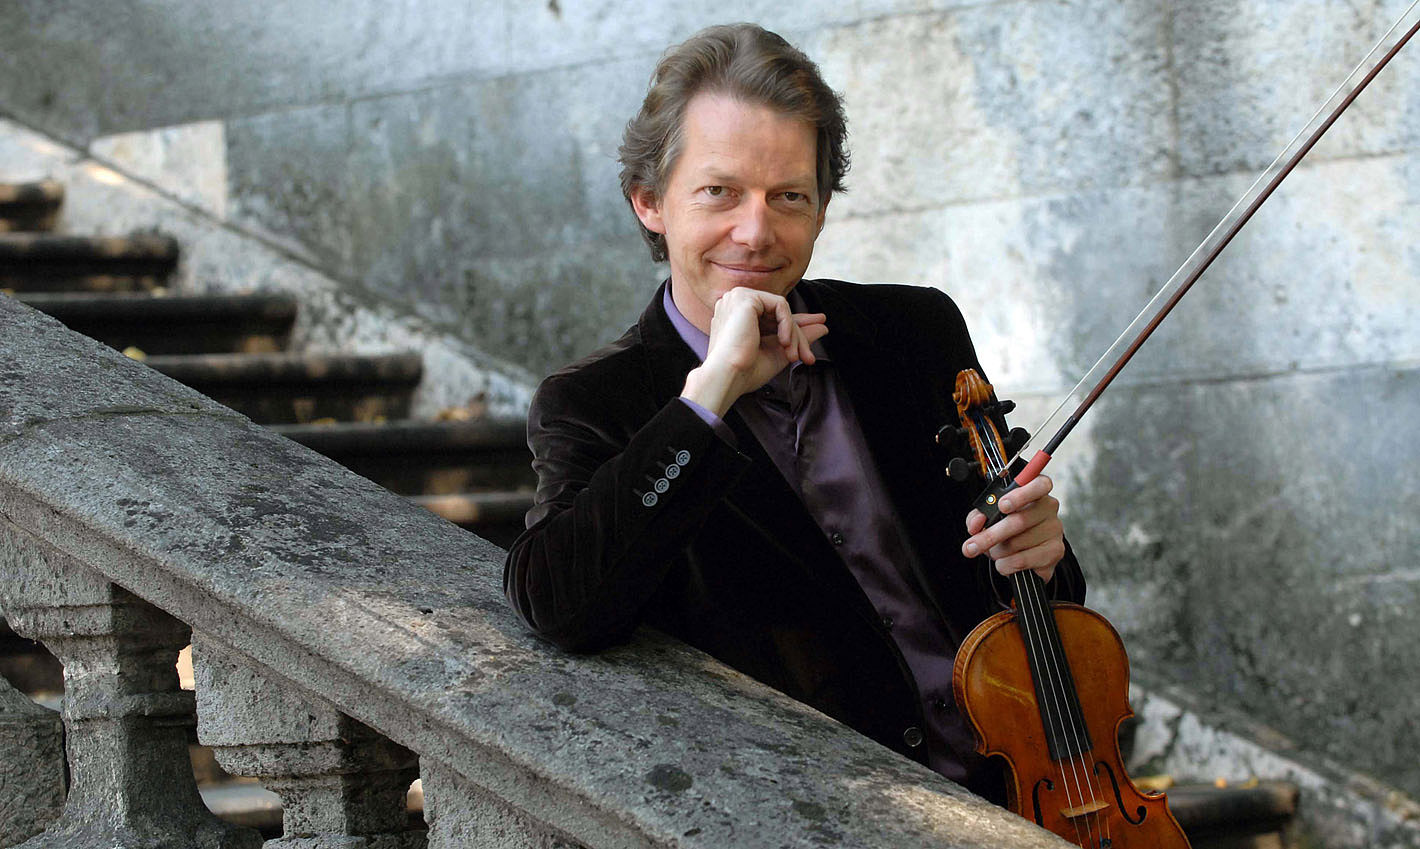 Violinvirtuose im Schießhaus: Gastprofessorenkonzert mit dem Paganini-Experten Ingolf Turban bei den Weimarer Meisterkursen